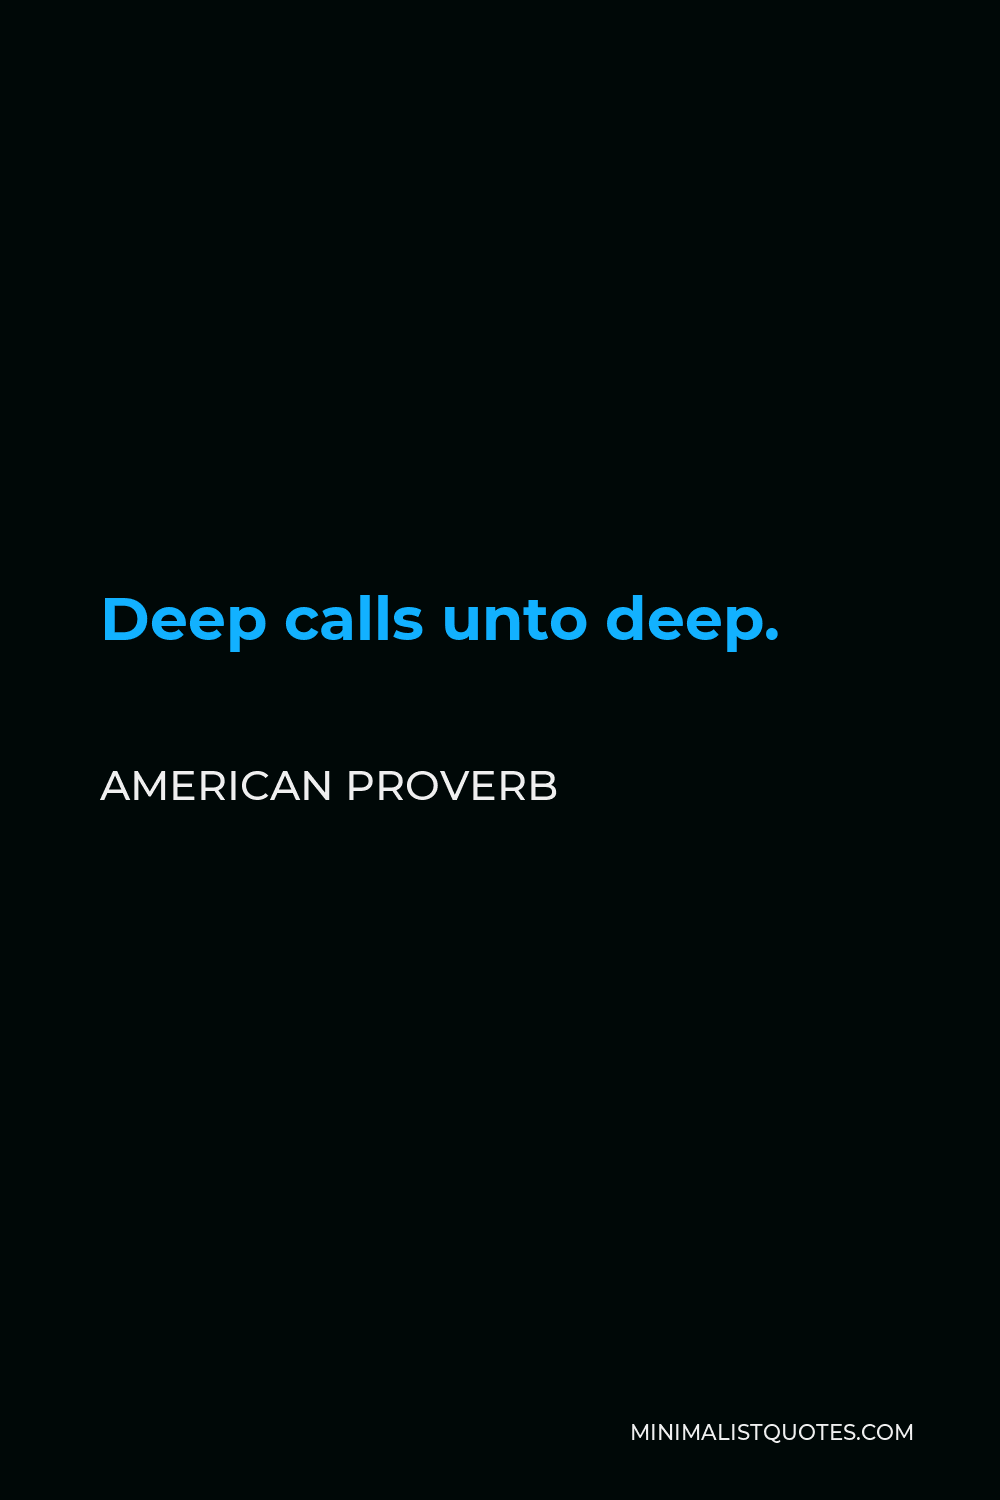 American Proverb Quote - Deep calls unto deep.